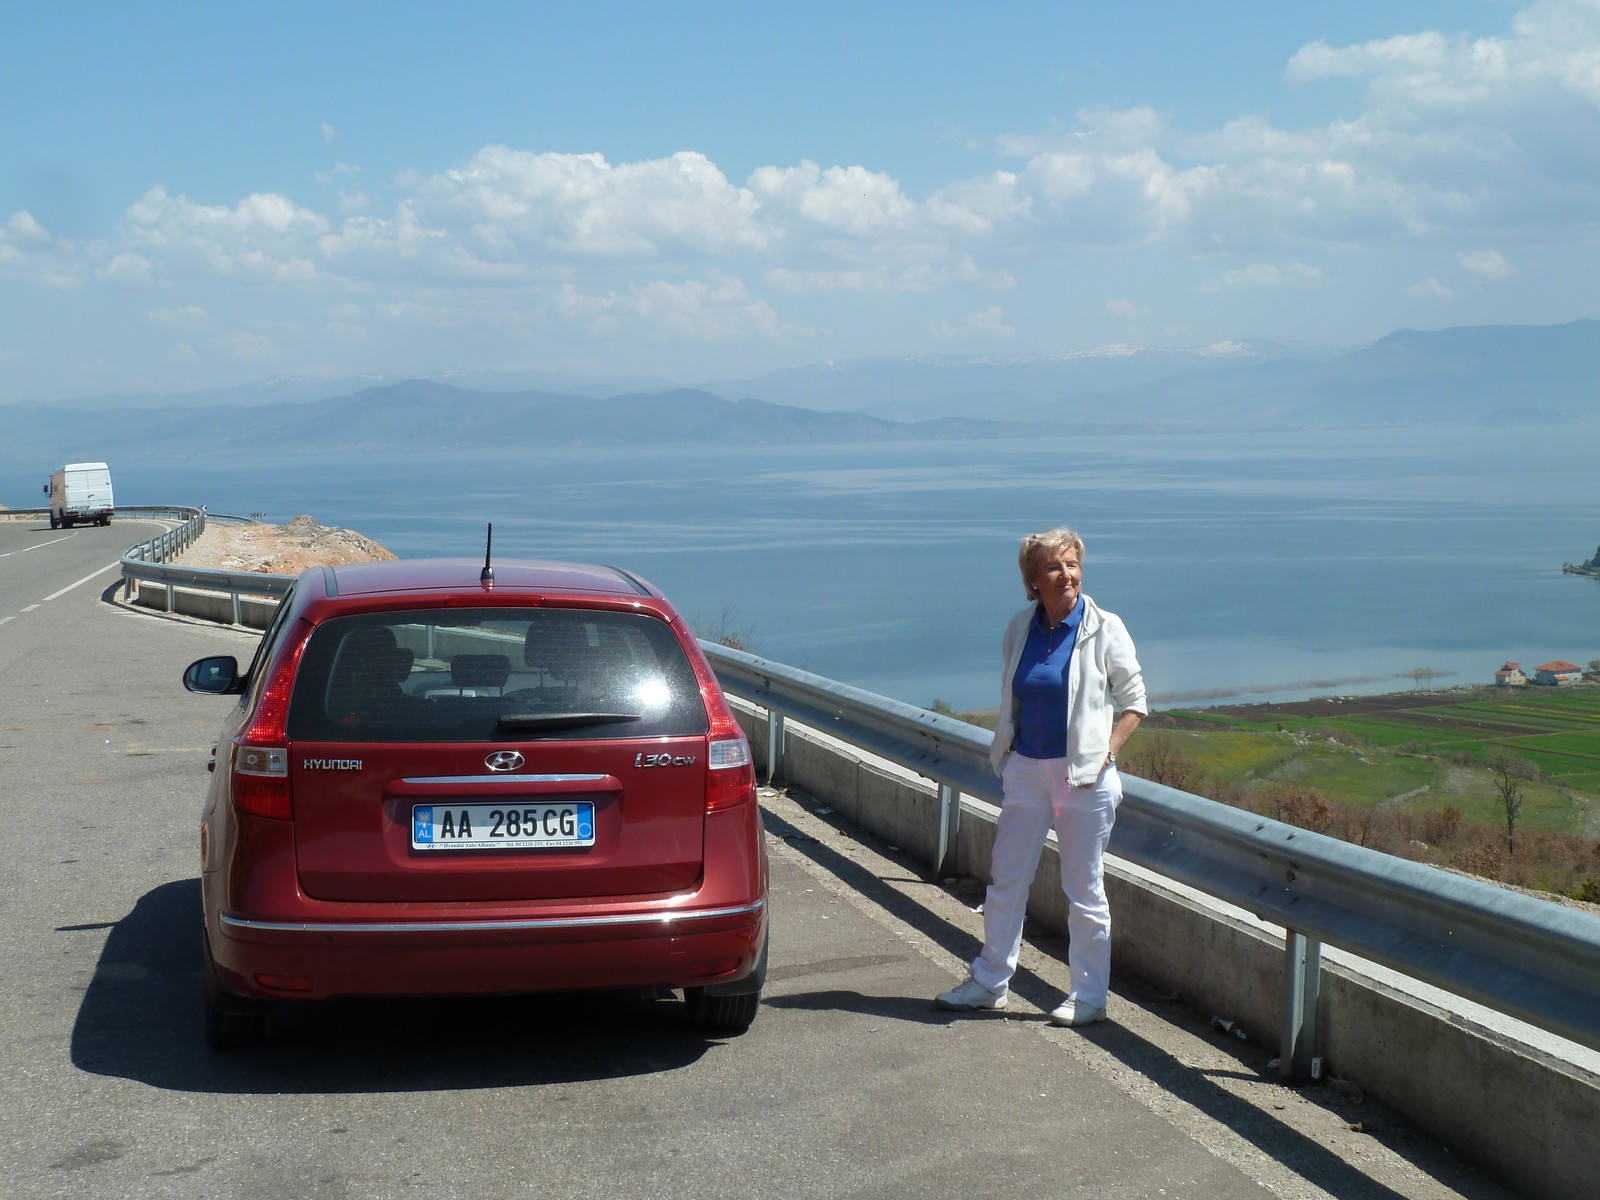 Fahrt nach Osten zum Ohridsee (Erweiterung Ost)